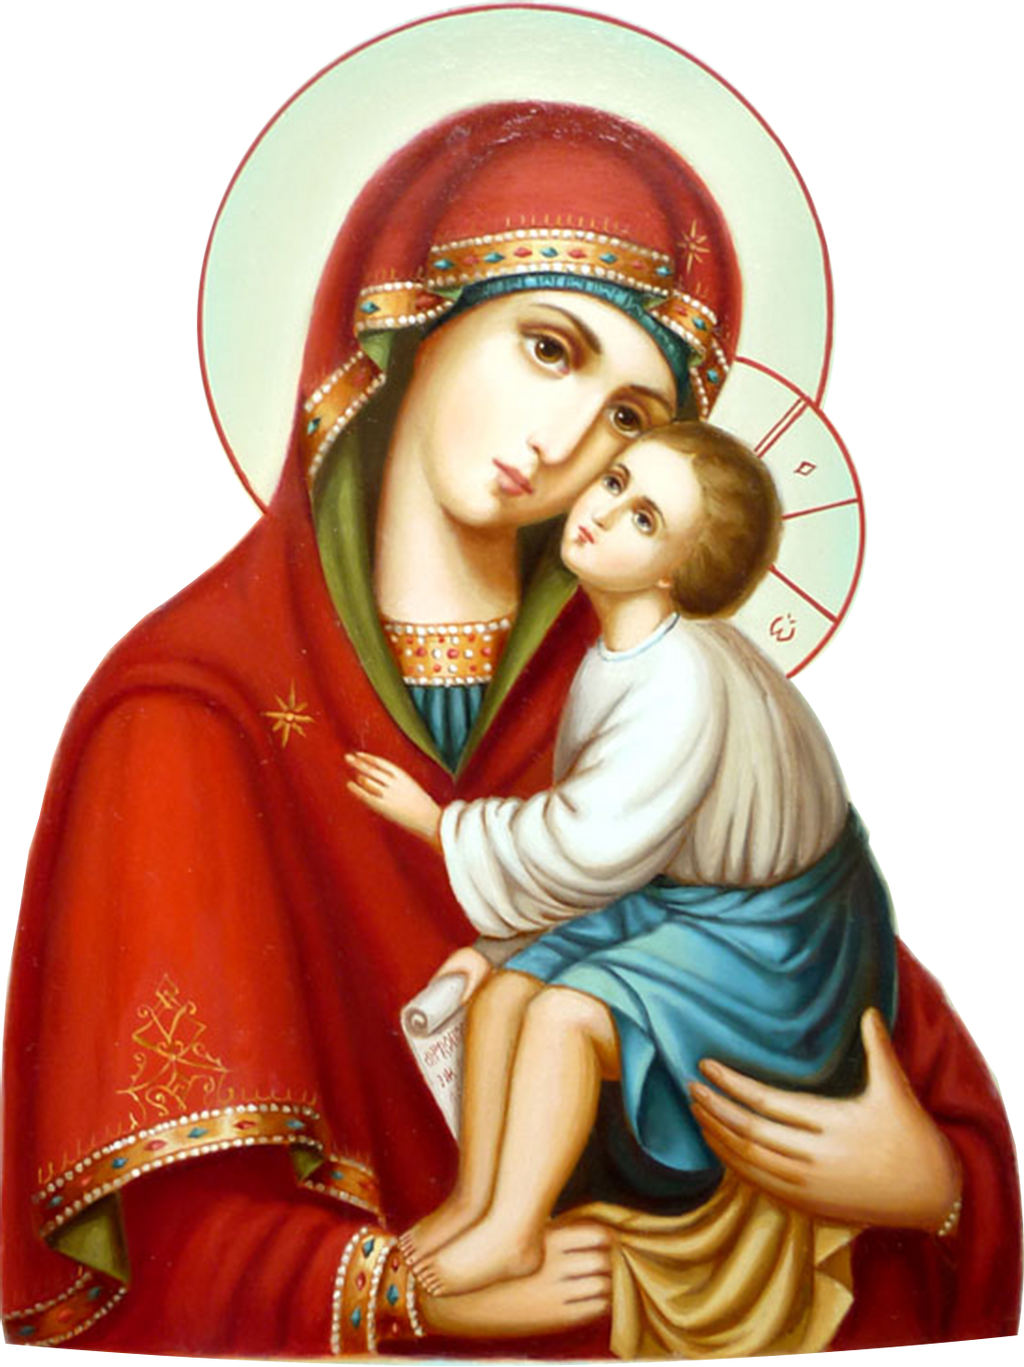 Матерь благородная. Икона Пресвятой Богородицы Марии. Икона Пресвятой Девы Марии матери Христа.